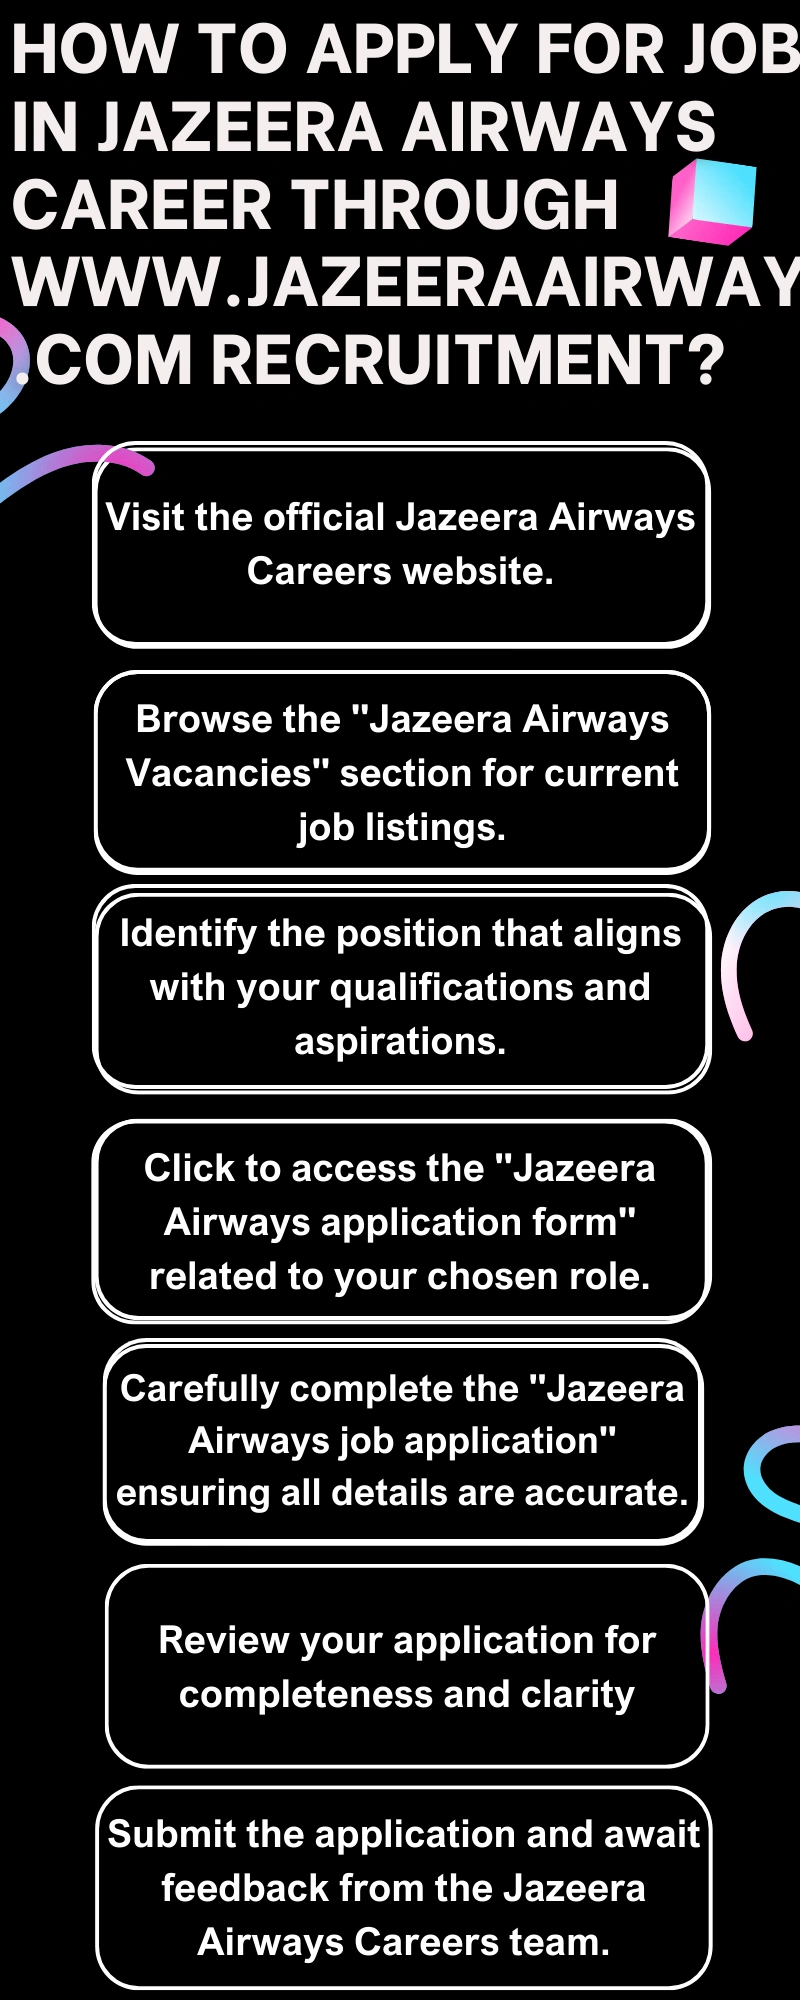 How to Apply for Jobs in Jazeera Airways Career through www.jazeeraairways.com recruitment?